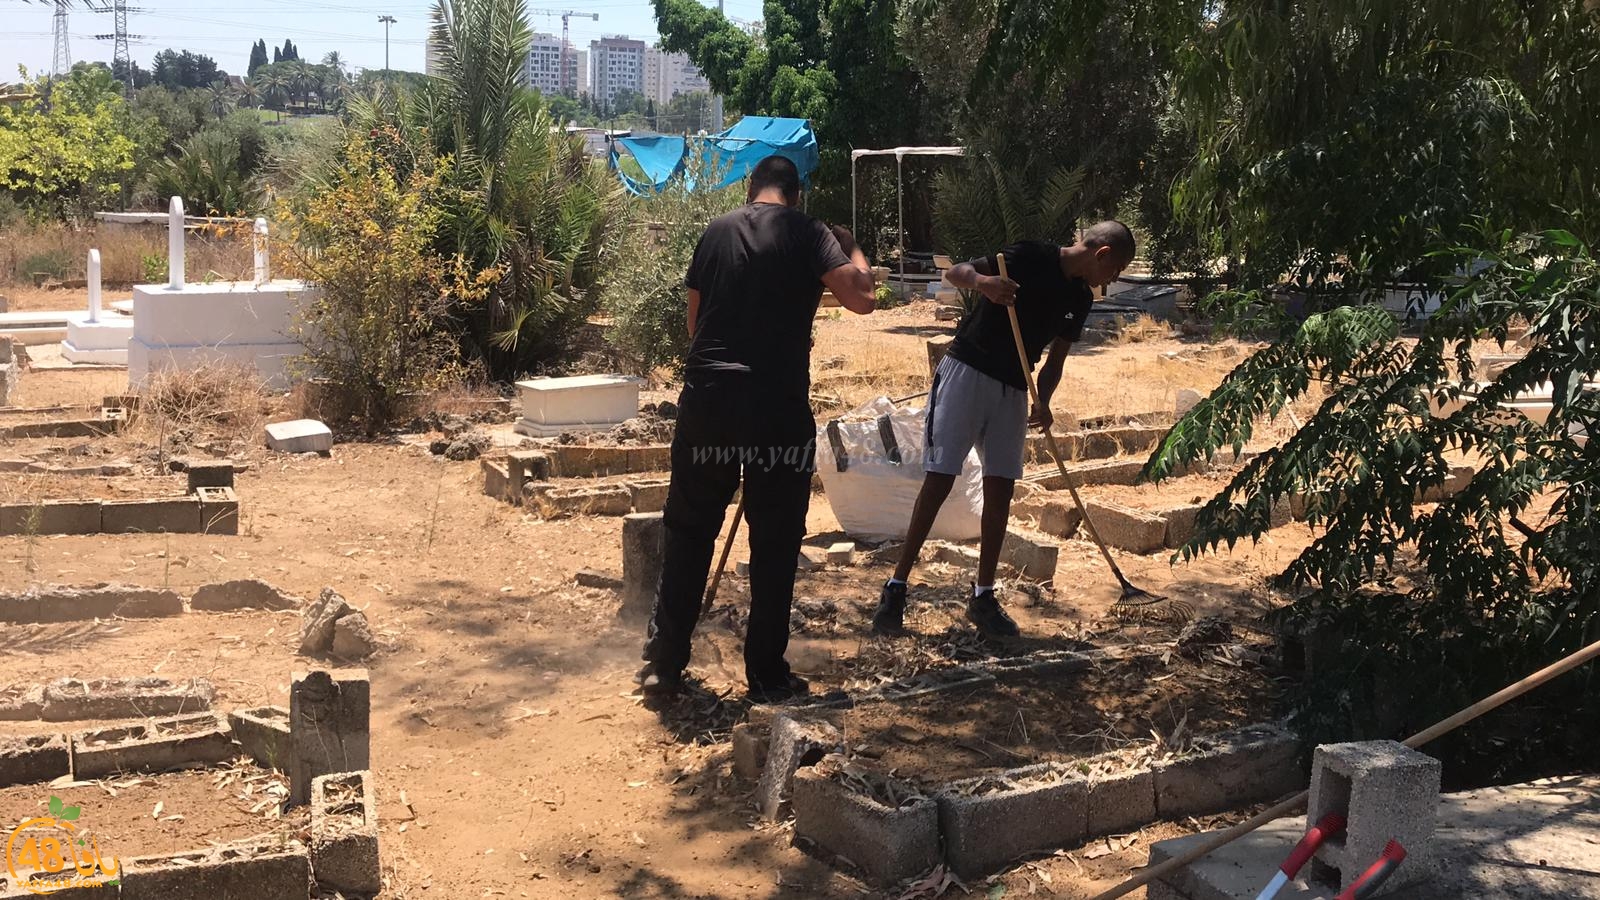  بالصور: شباب كشاف النادي الاسلامي في مشروع لتنظيف مقبرة طاسو